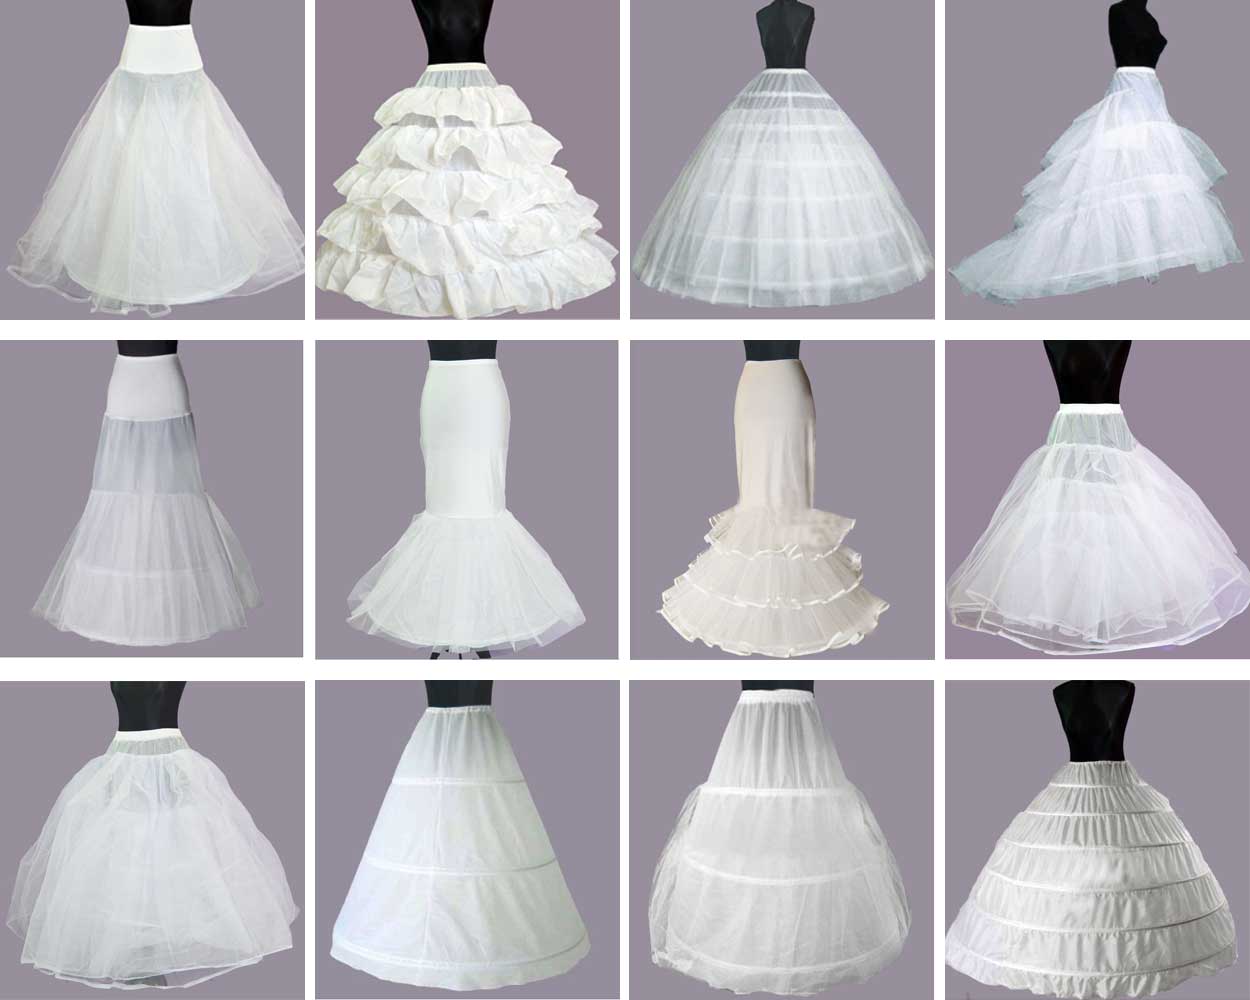 YULUOSHA Women Crinoline Hoop Petticoats Skirt Slips Floor Length Underskirt  for Ball Gown Wedding Dress | Petticoat for wedding dress, Ball gowns, Ball  gown skirt